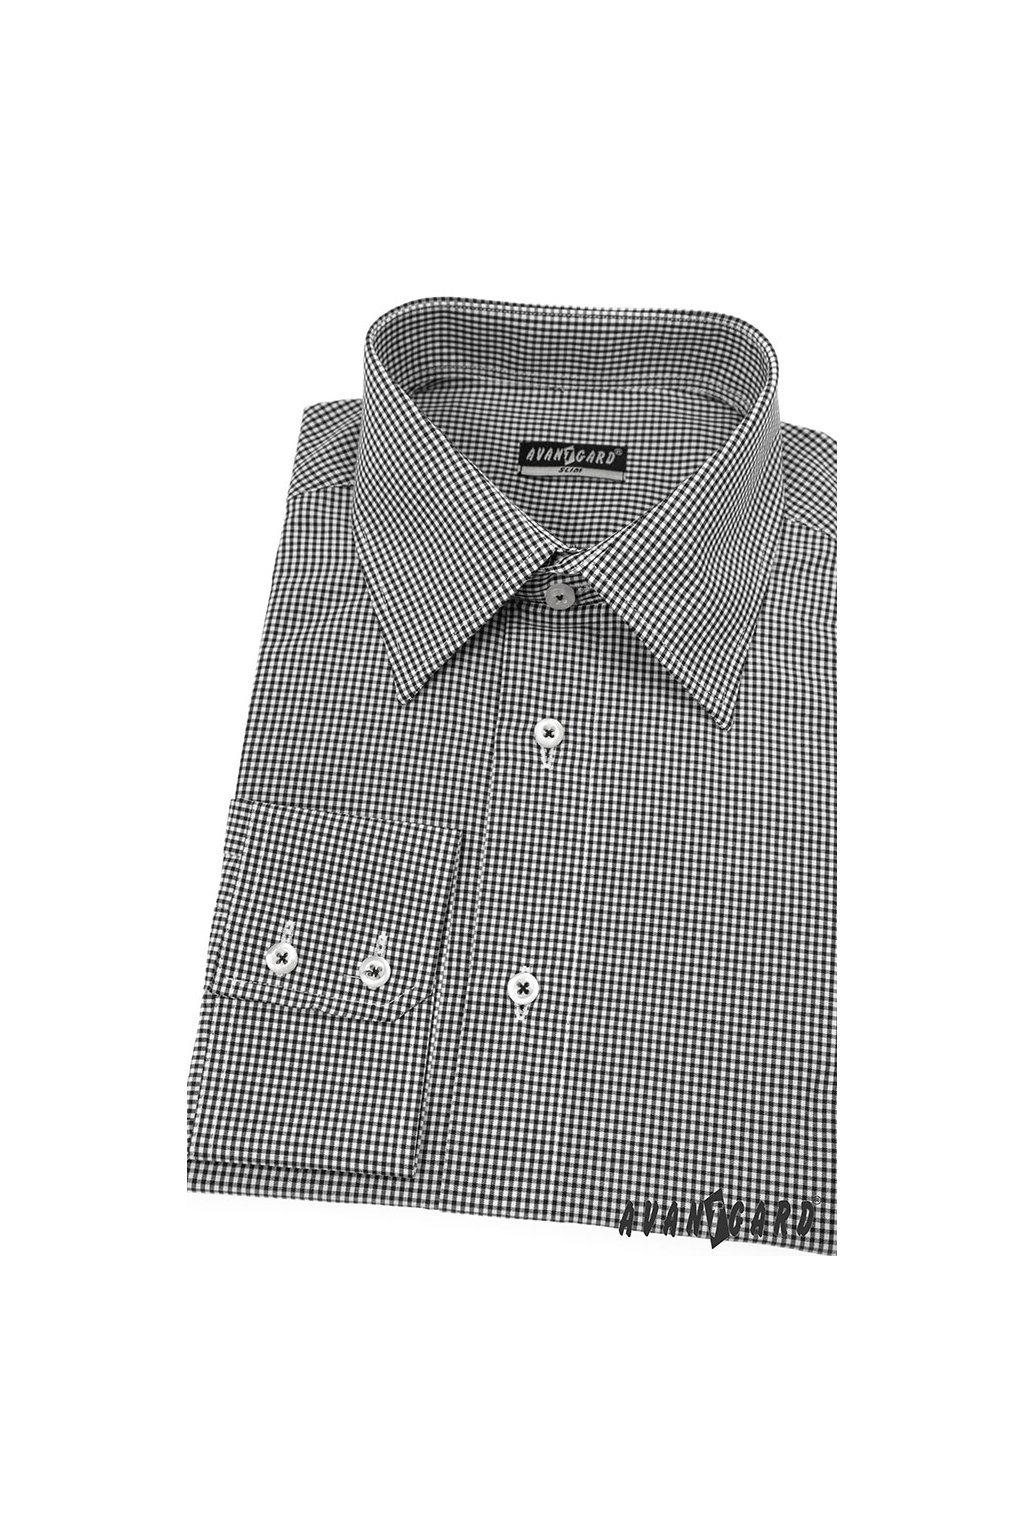 Pánská košile SLIM, 115-2303, Černá